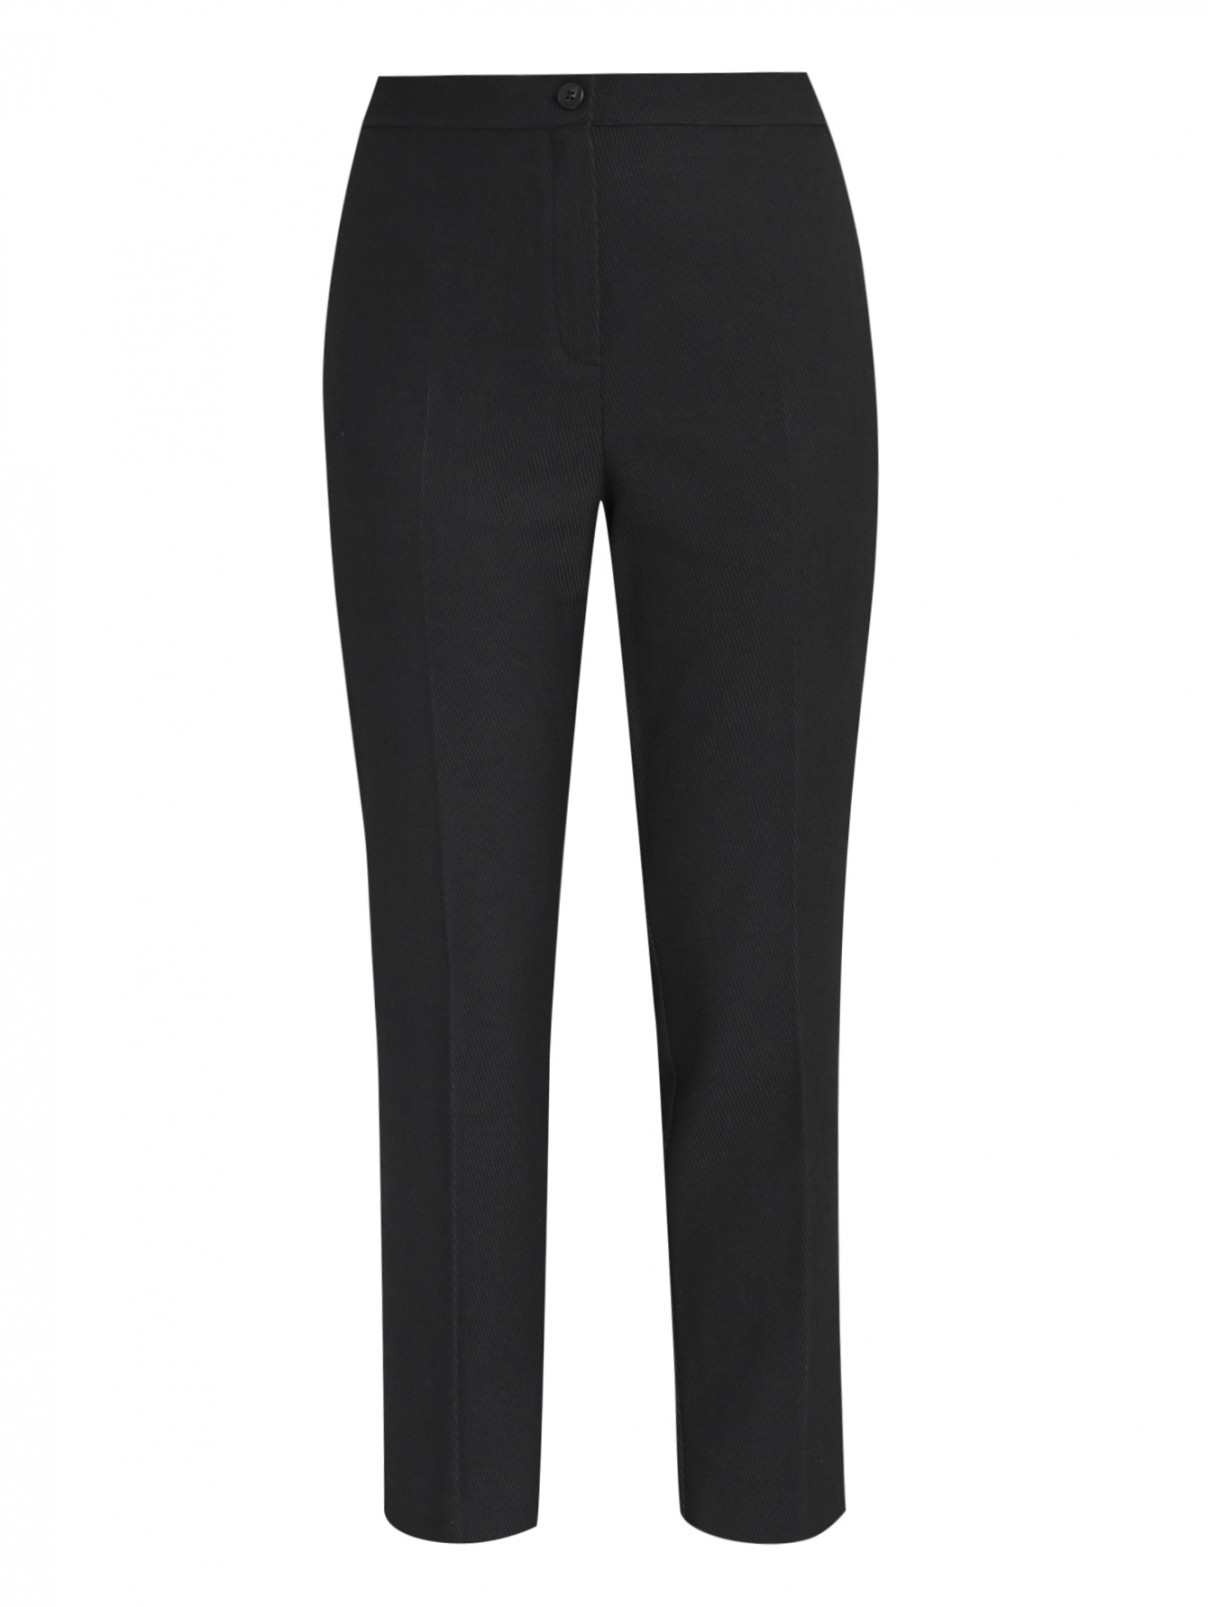 Укороченные брюки из вискозы и шерсти Marina Rinaldi  –  Общий вид  – Цвет:  Черный